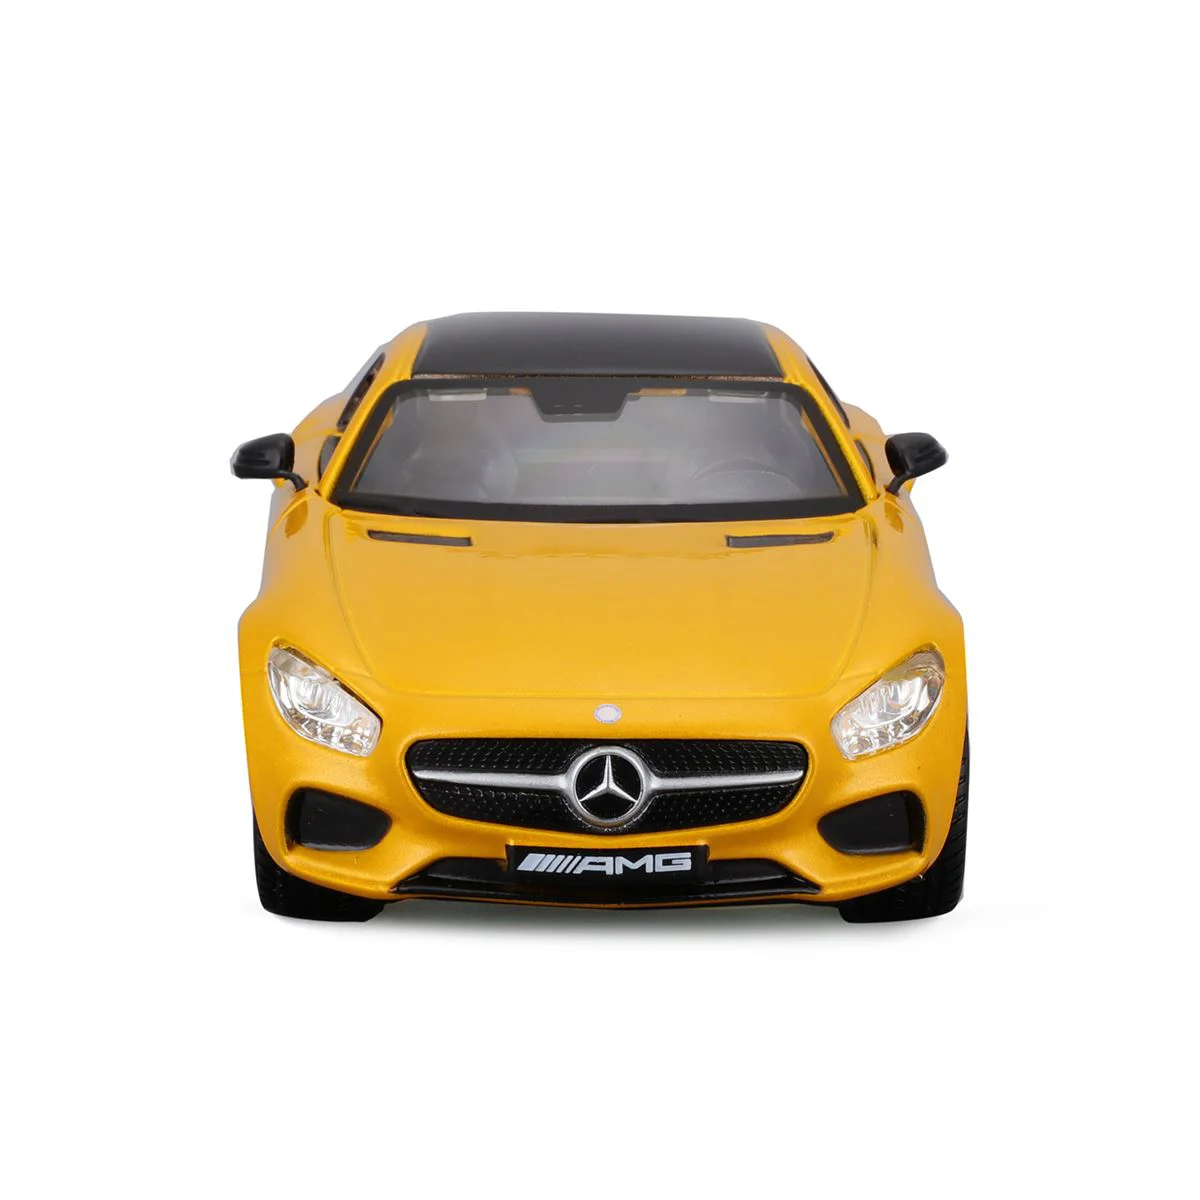 Модель автомобиля Bburago Mercedes-AMG GT, 1:32